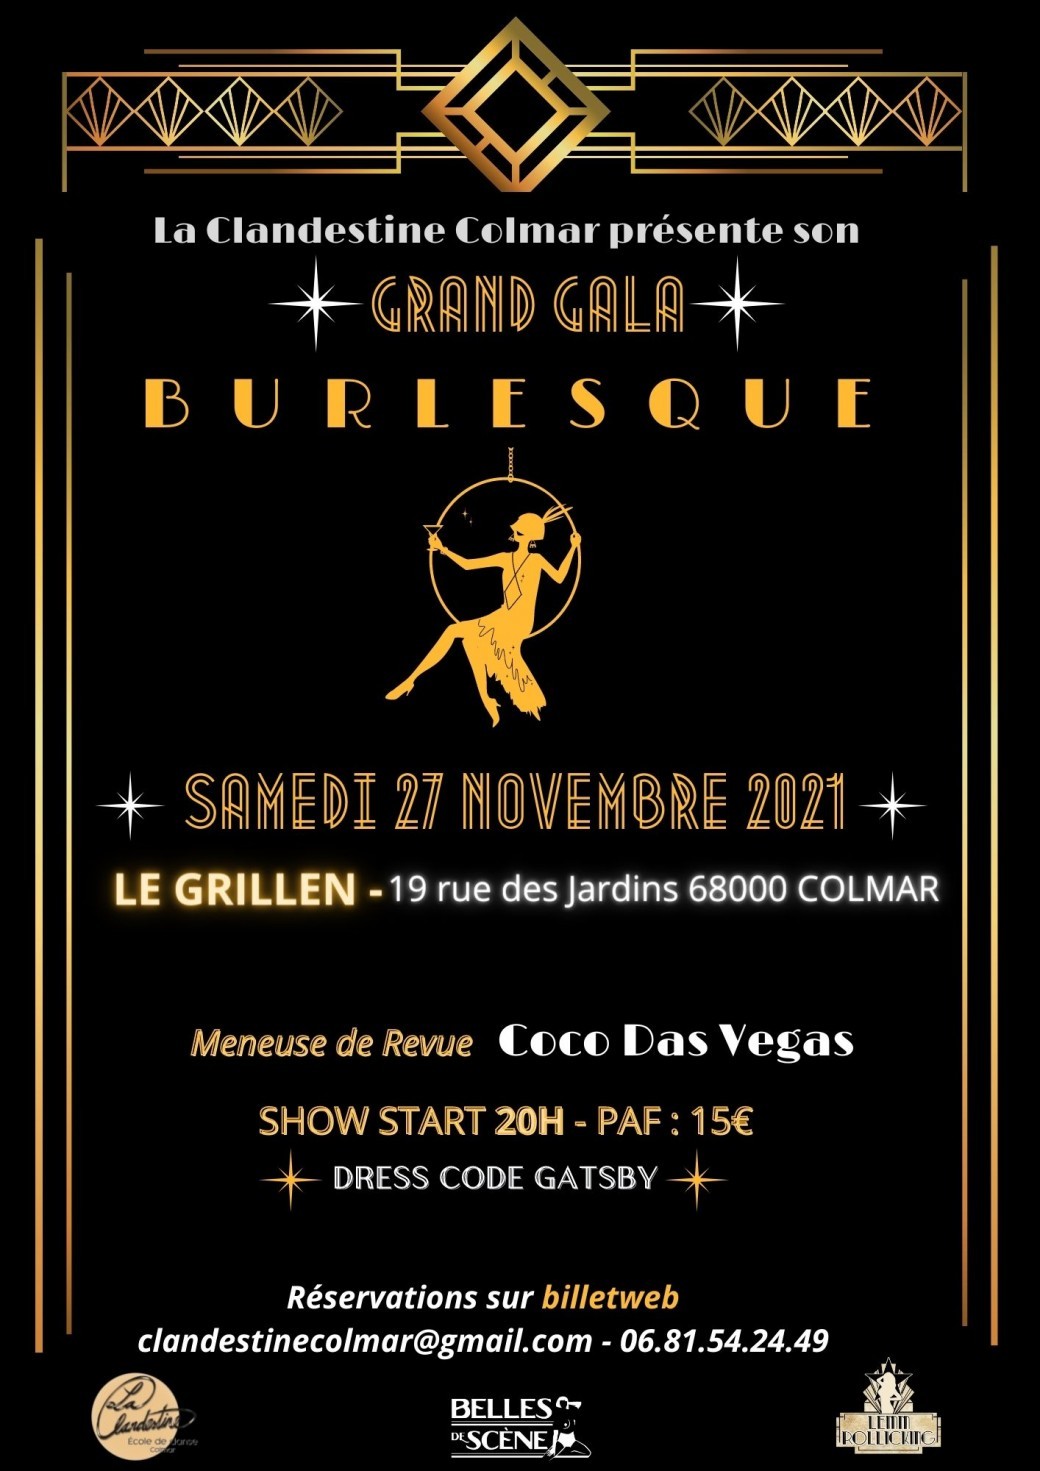 Le Grand Gala Burlesque